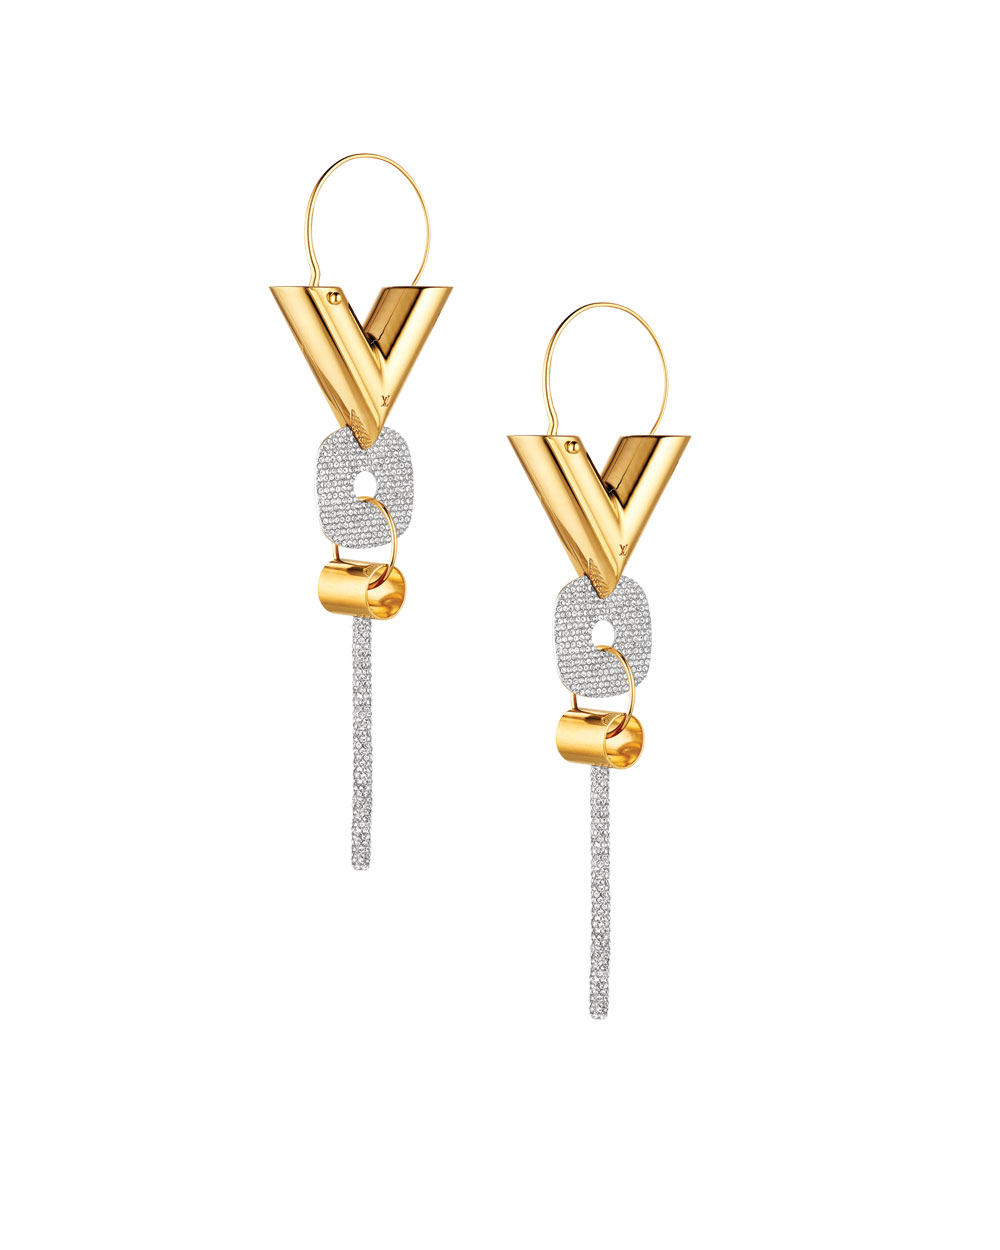 Louis Vuitton earrings, $1400